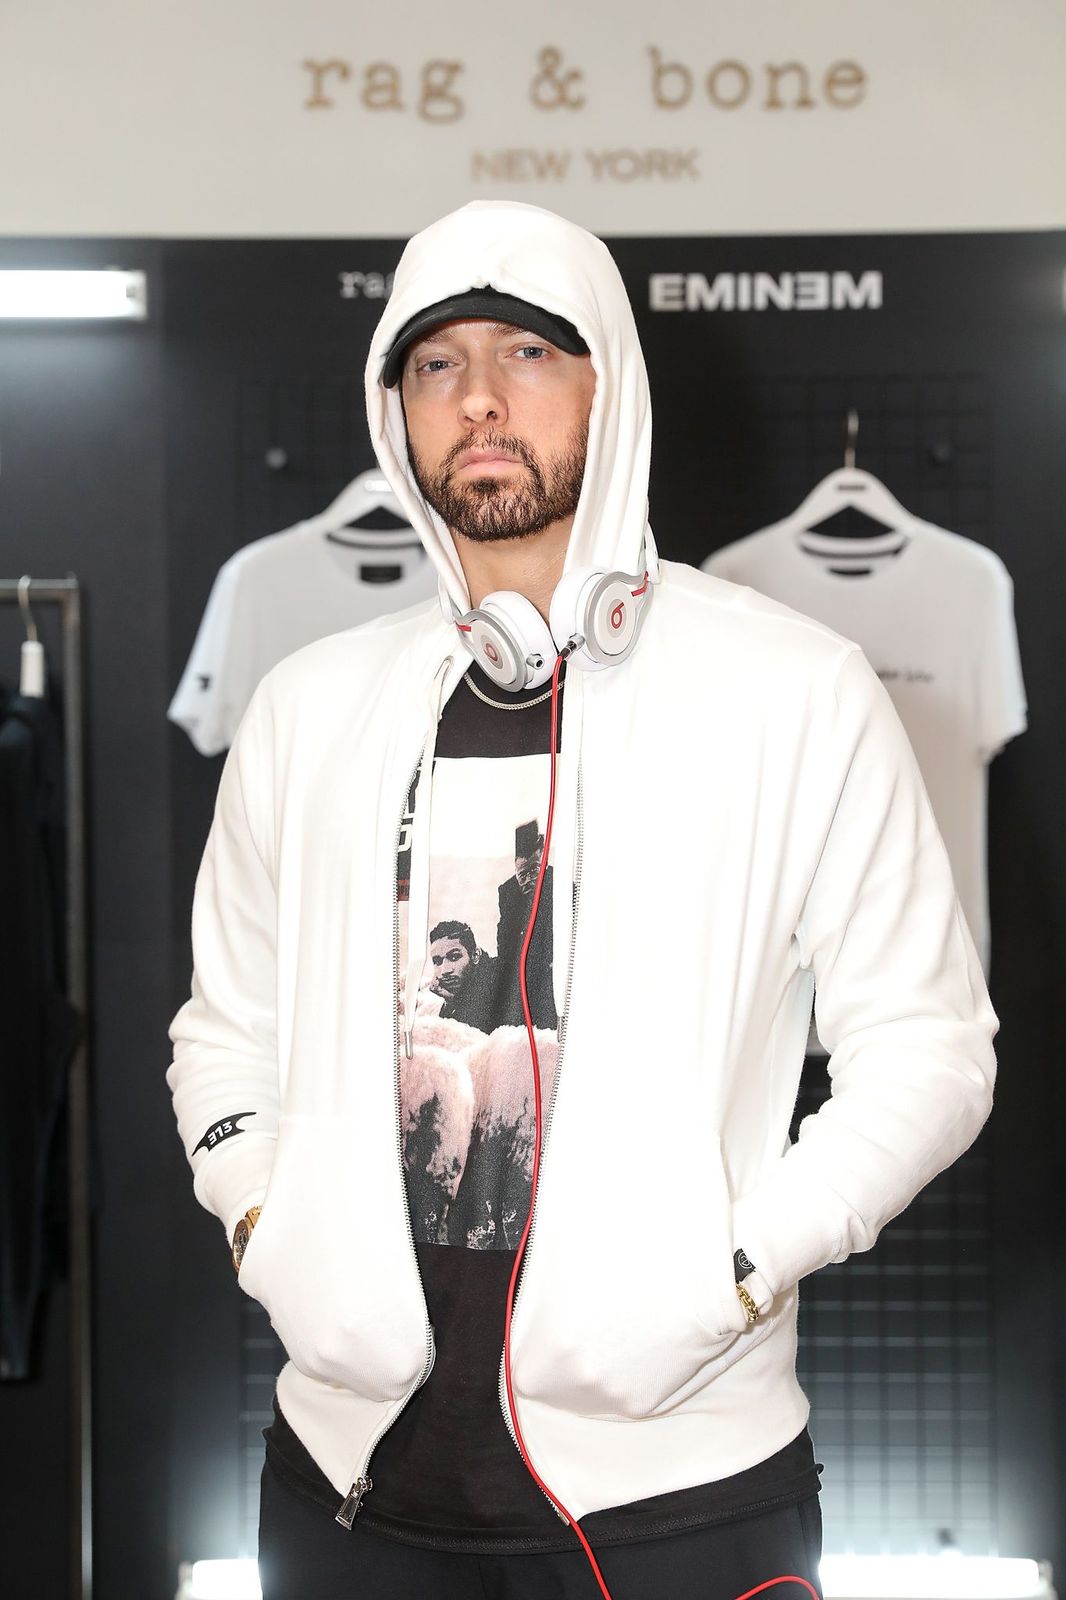  Eminem at the rag & bone X Eminem London Pop-Up on July 13, 2018 | Getty Images